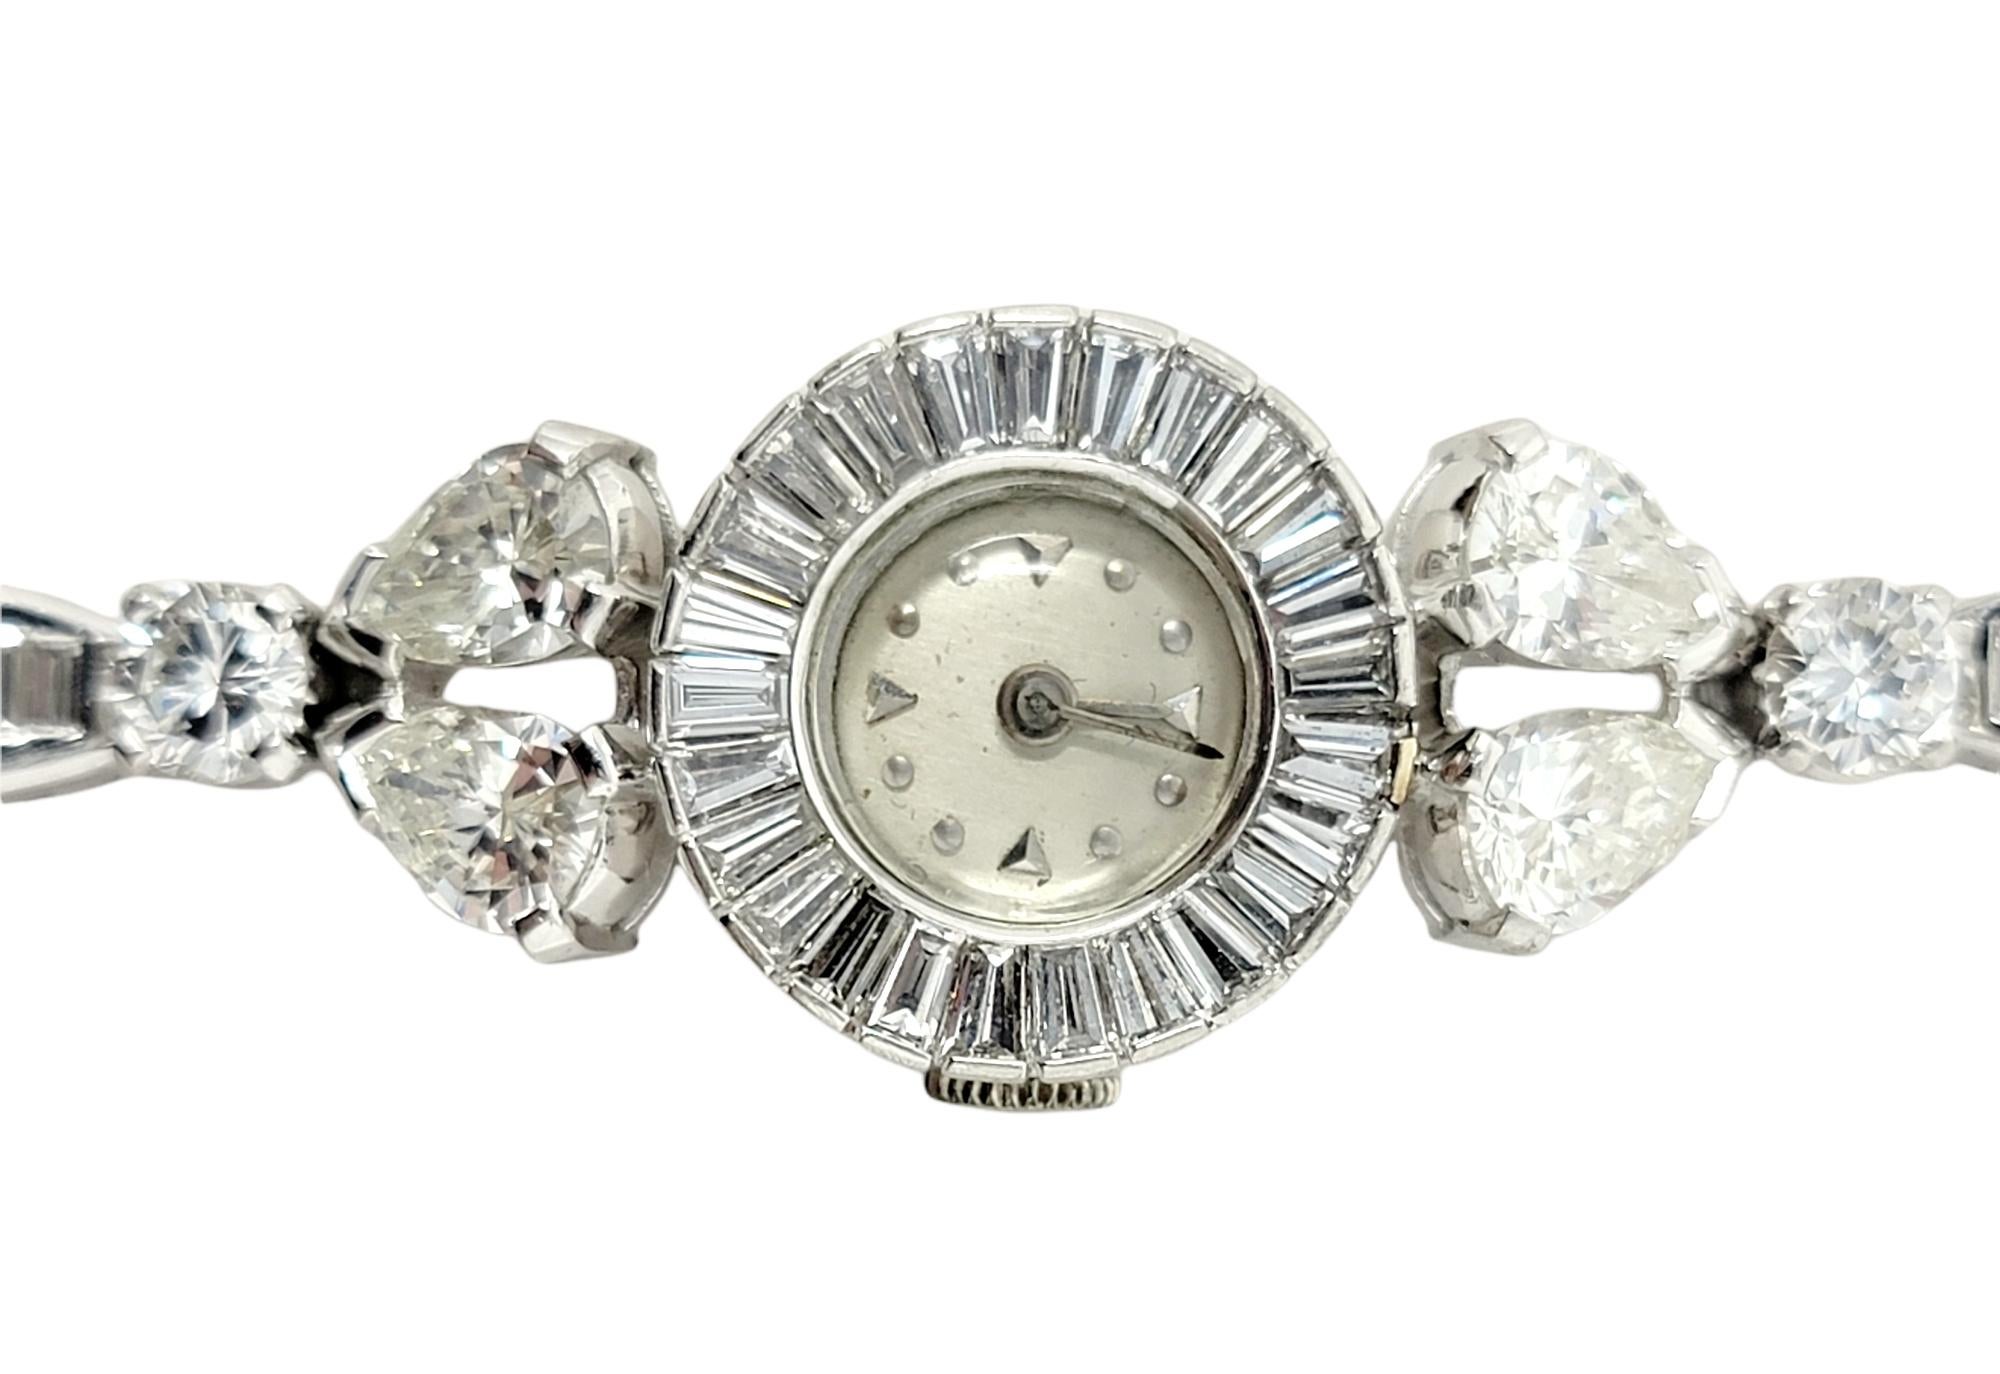 Exquisite Vintage-Armbanduhr mit 9,23 Karat glitzernden Naturdiamanten besetzt. Mit seinen flexiblen, länglichen Platingliedern schmiegt sich das glitzernde Armband sanft um das Handgelenk und setzt die 84 funkelnden Diamanten in Szene, die aus